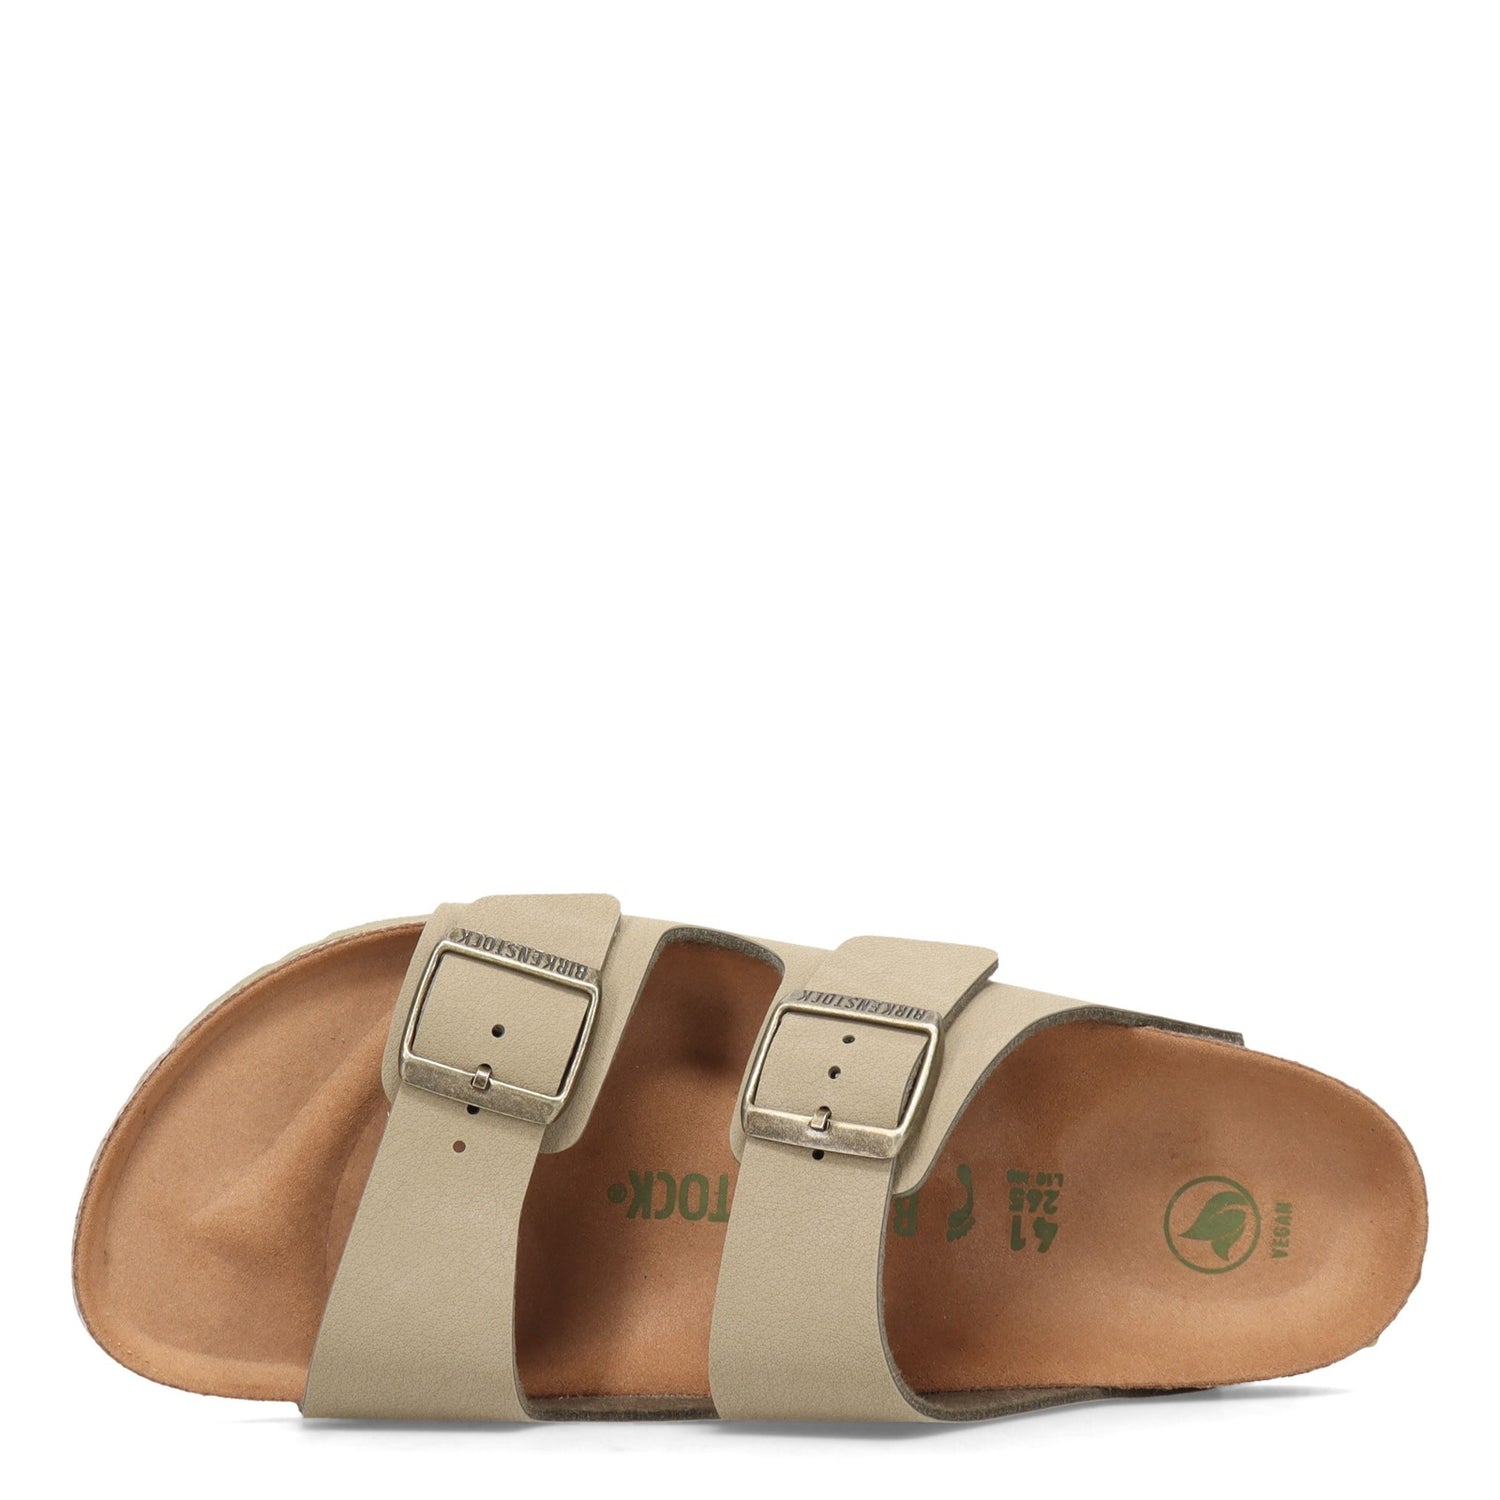 Peltz Shoes  Women's Birkenstock Arizona Slide Sandal - Narrow Width FADED KHAKI 1020 540 N